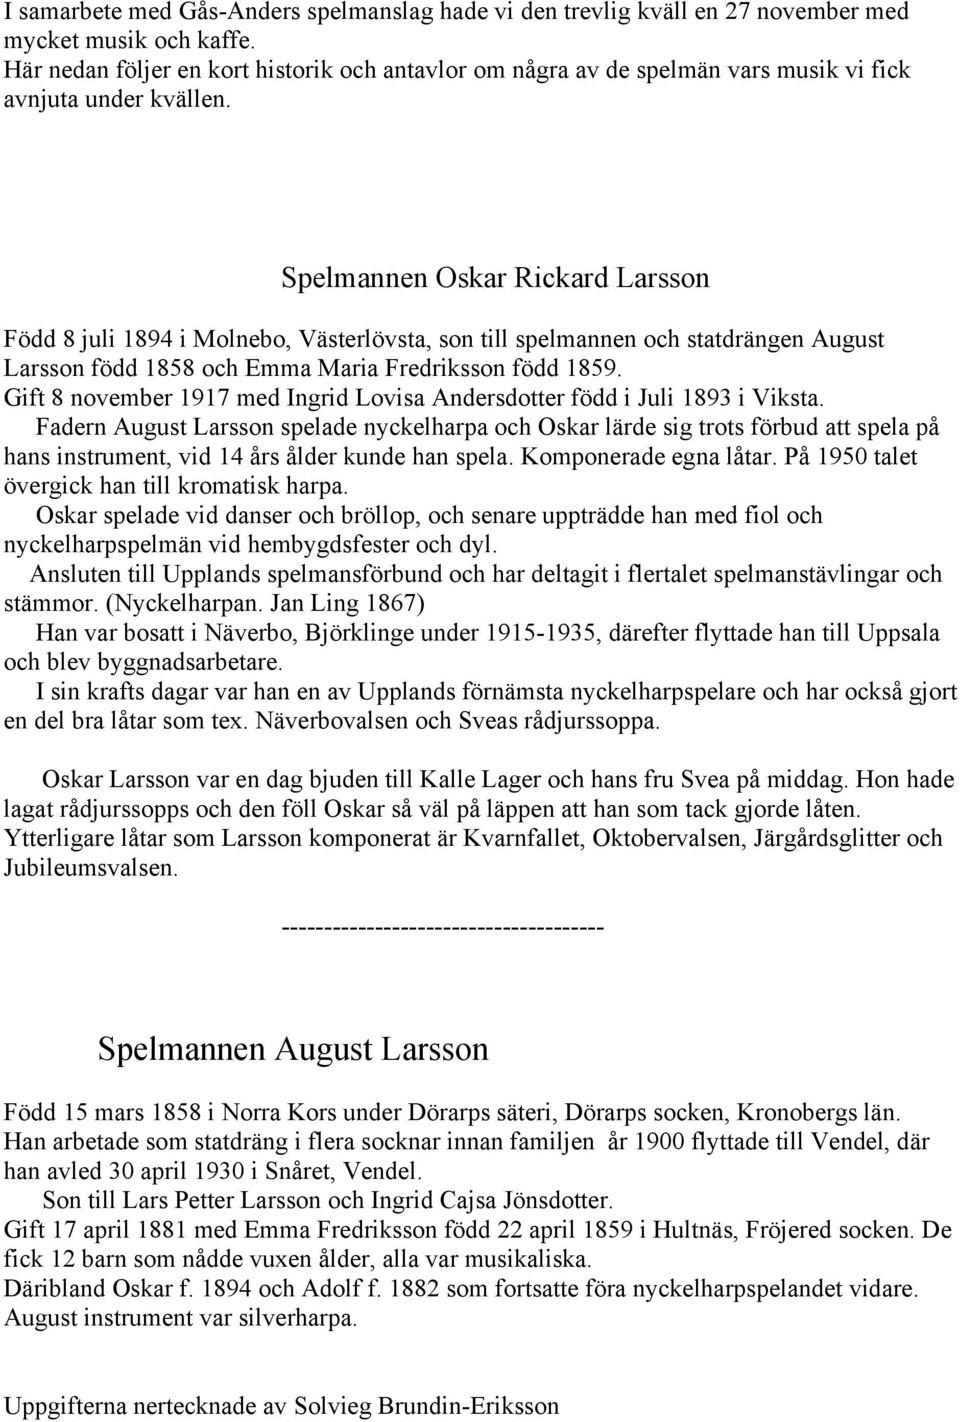 Spelmannen Oskar Rickard Larsson Född 8 juli 1894 i Molnebo, Västerlövsta, son till spelmannen och statdrängen August Larsson född 1858 och Emma Maria Fredriksson född 1859.